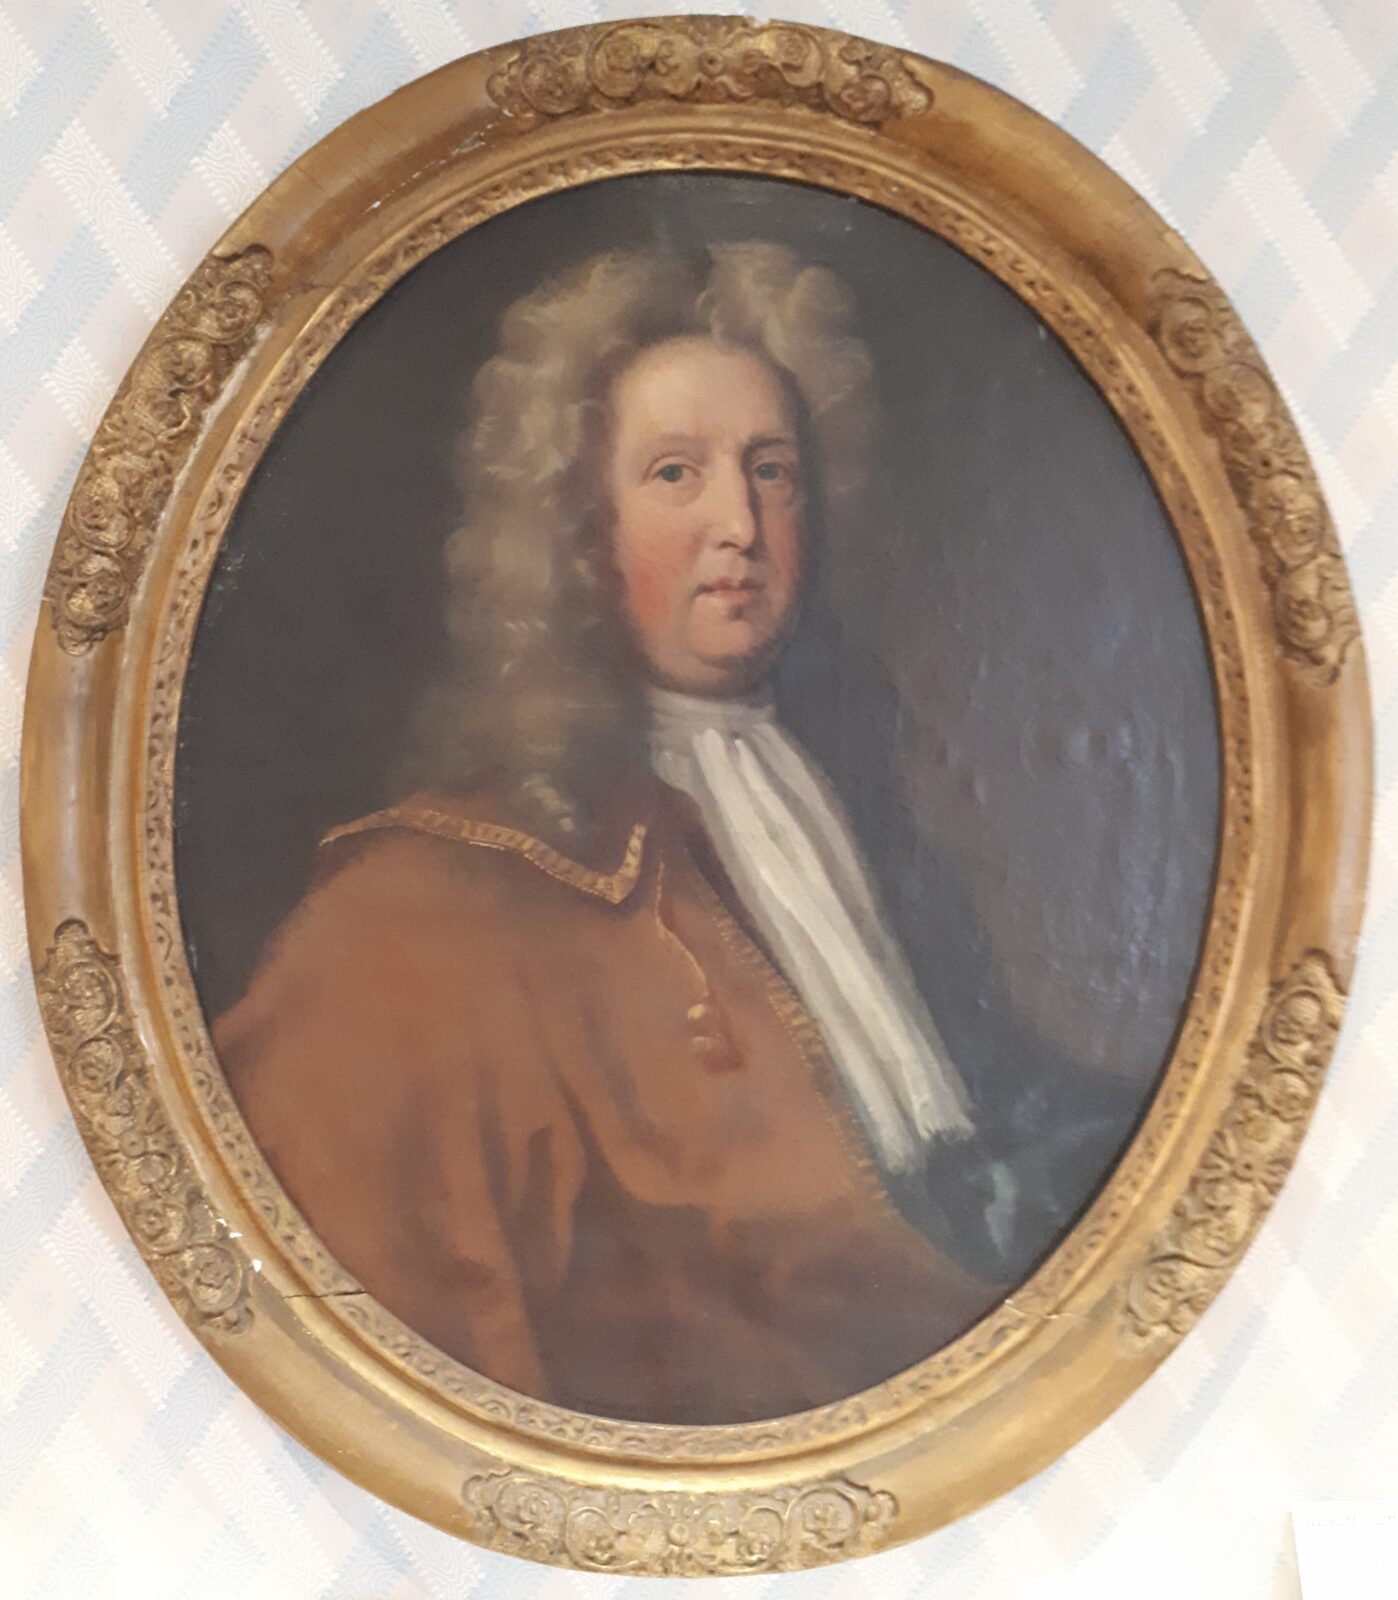 Oil painting of John Austen III in a gilt frame, c. 1680-1700